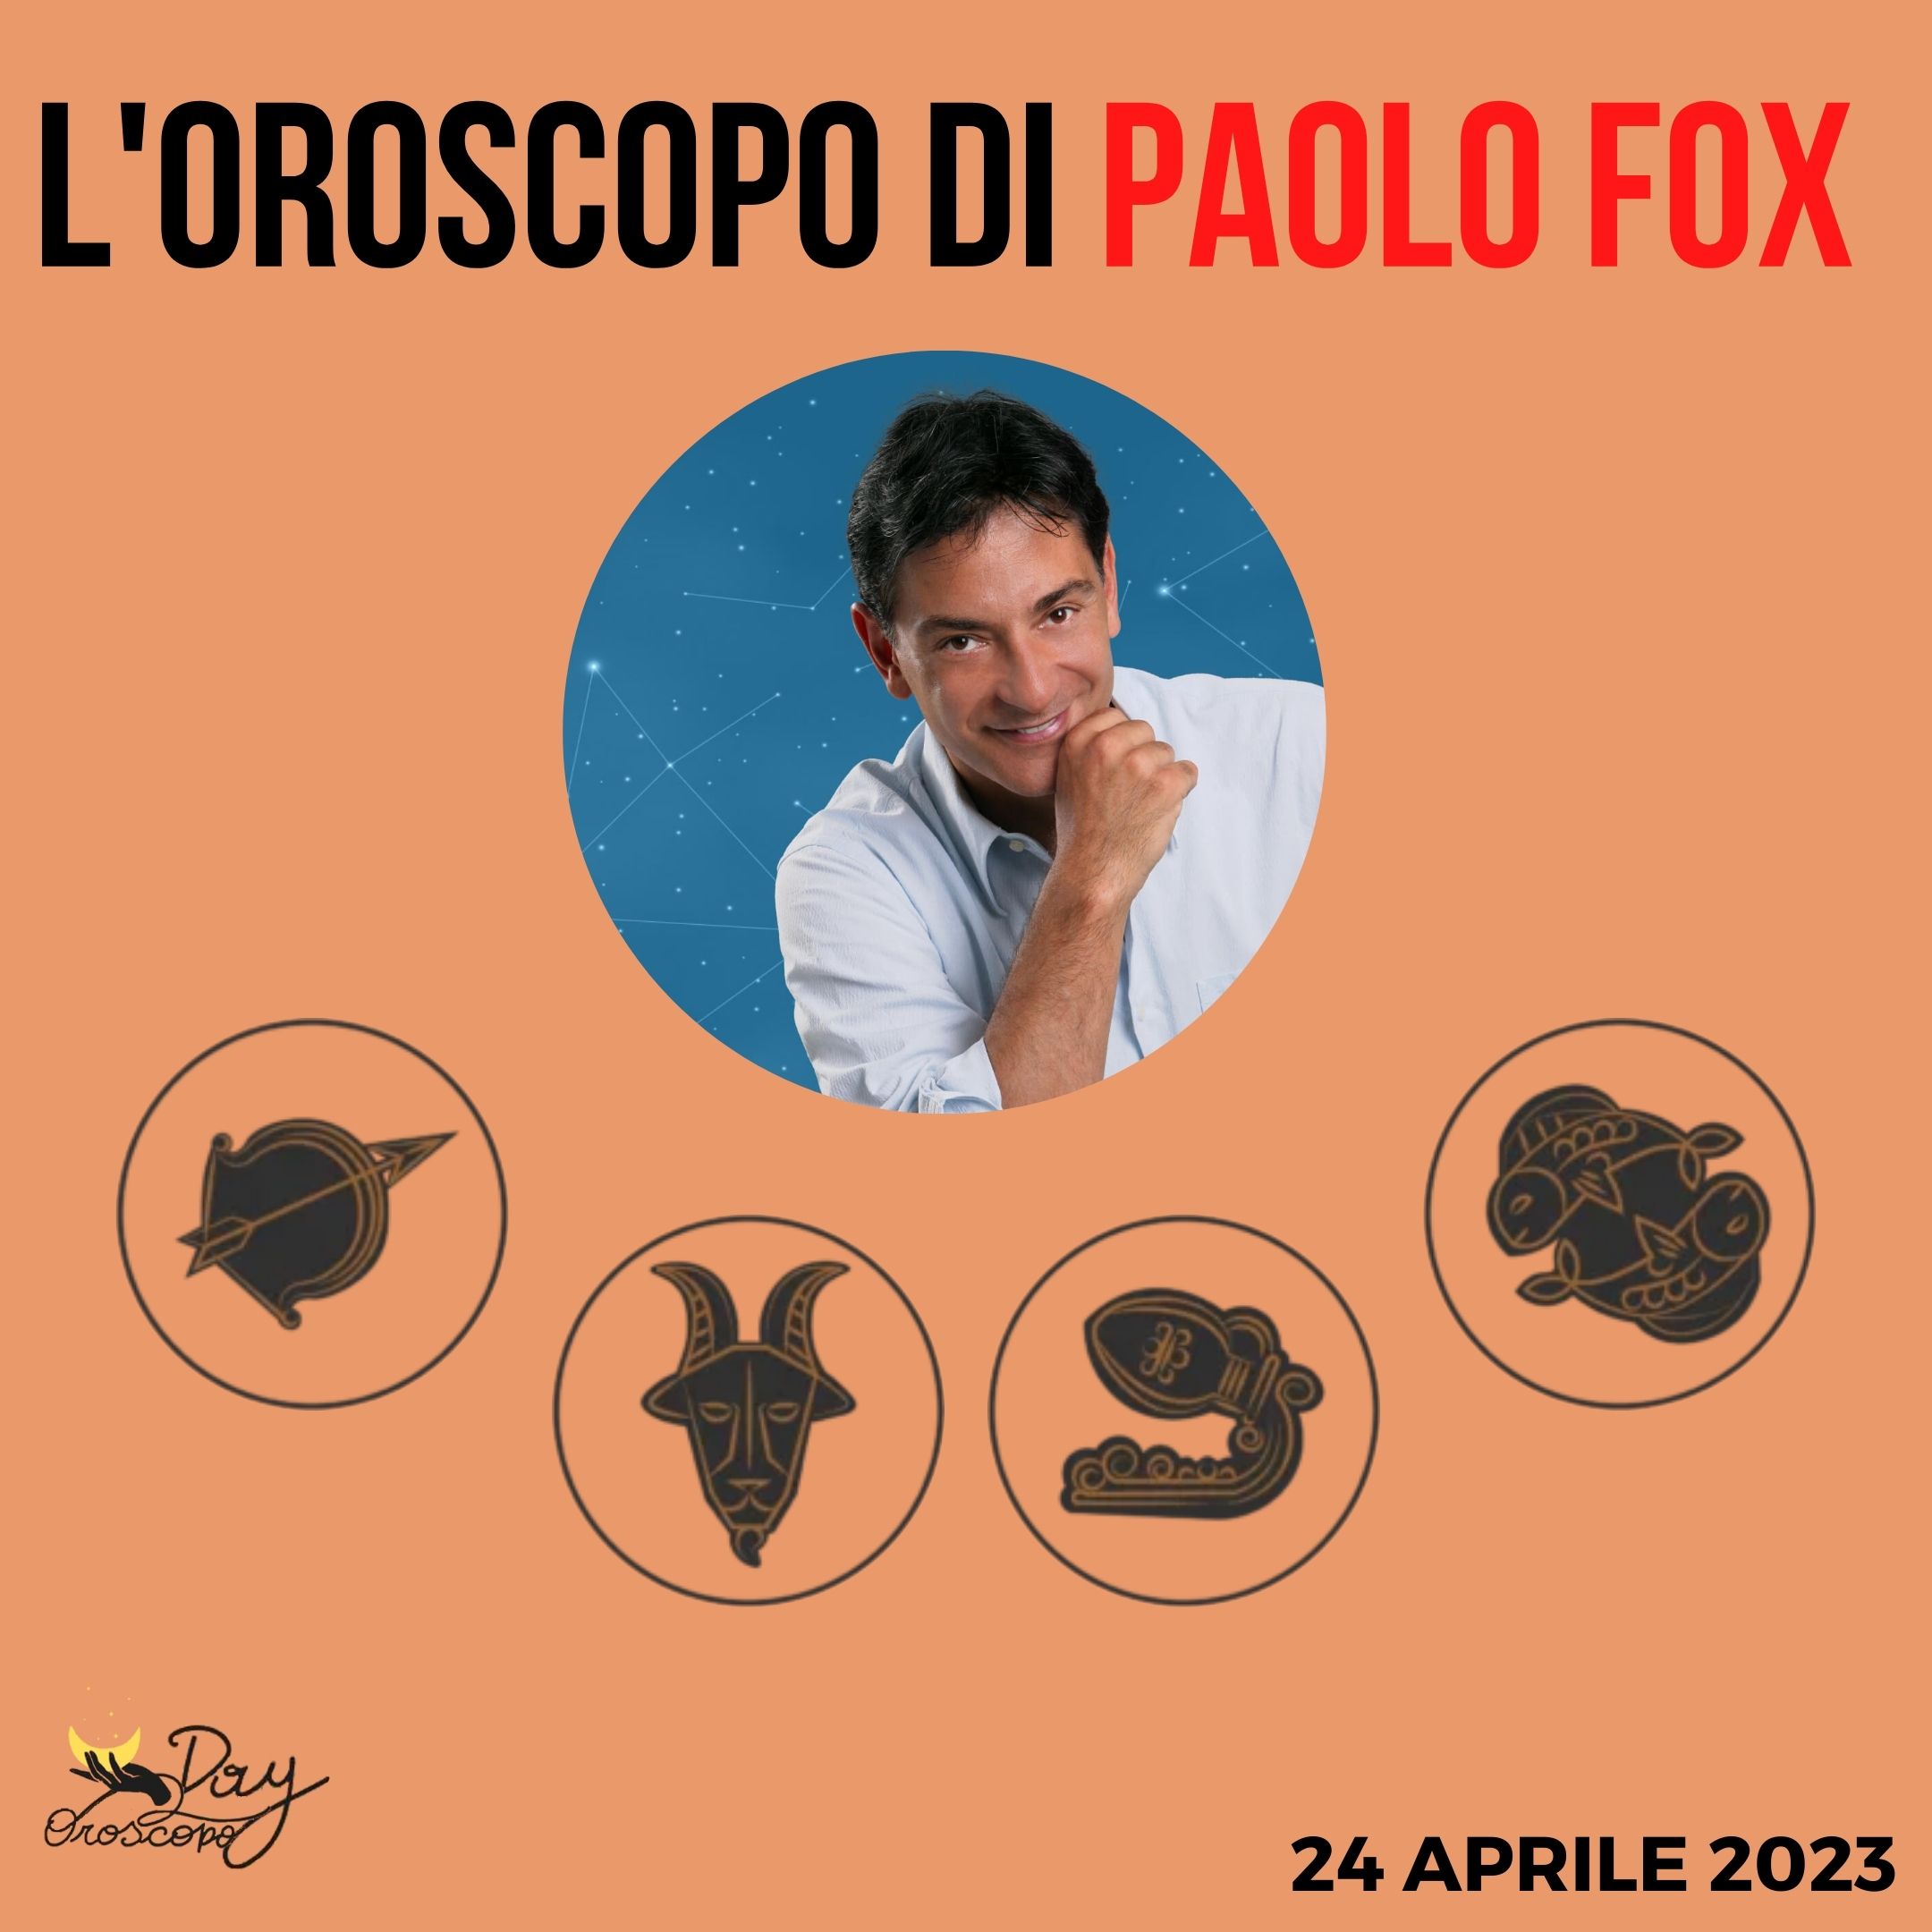 Oroscopo oggi domani Paolo Fox 24 aprile Sagittario Capricorno Acquario Pesci